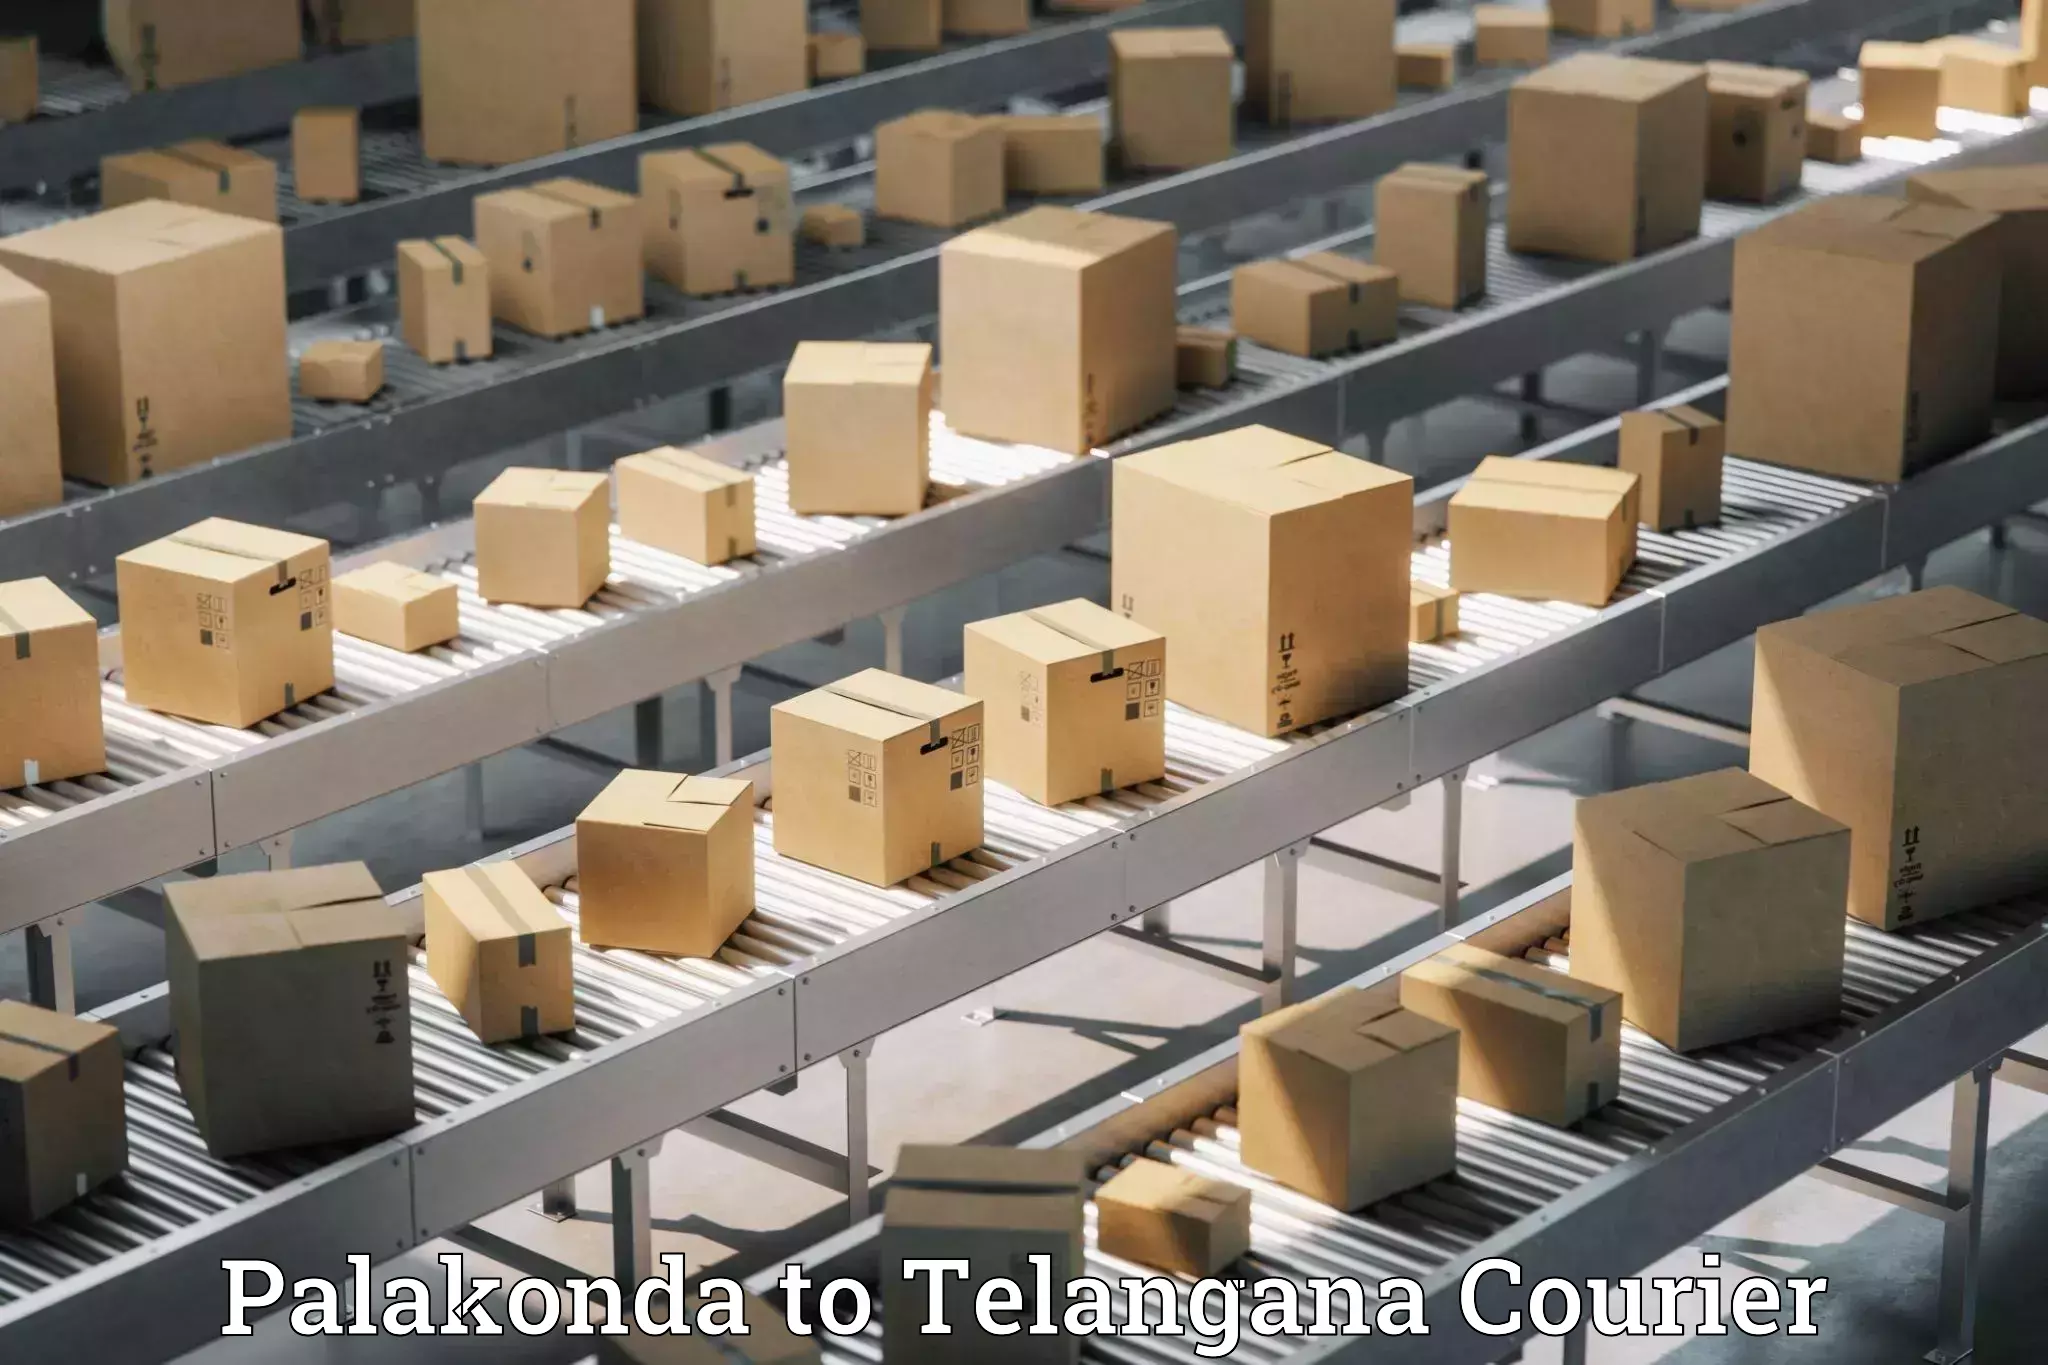 Sustainable shipping practices Palakonda to Sikanderguda